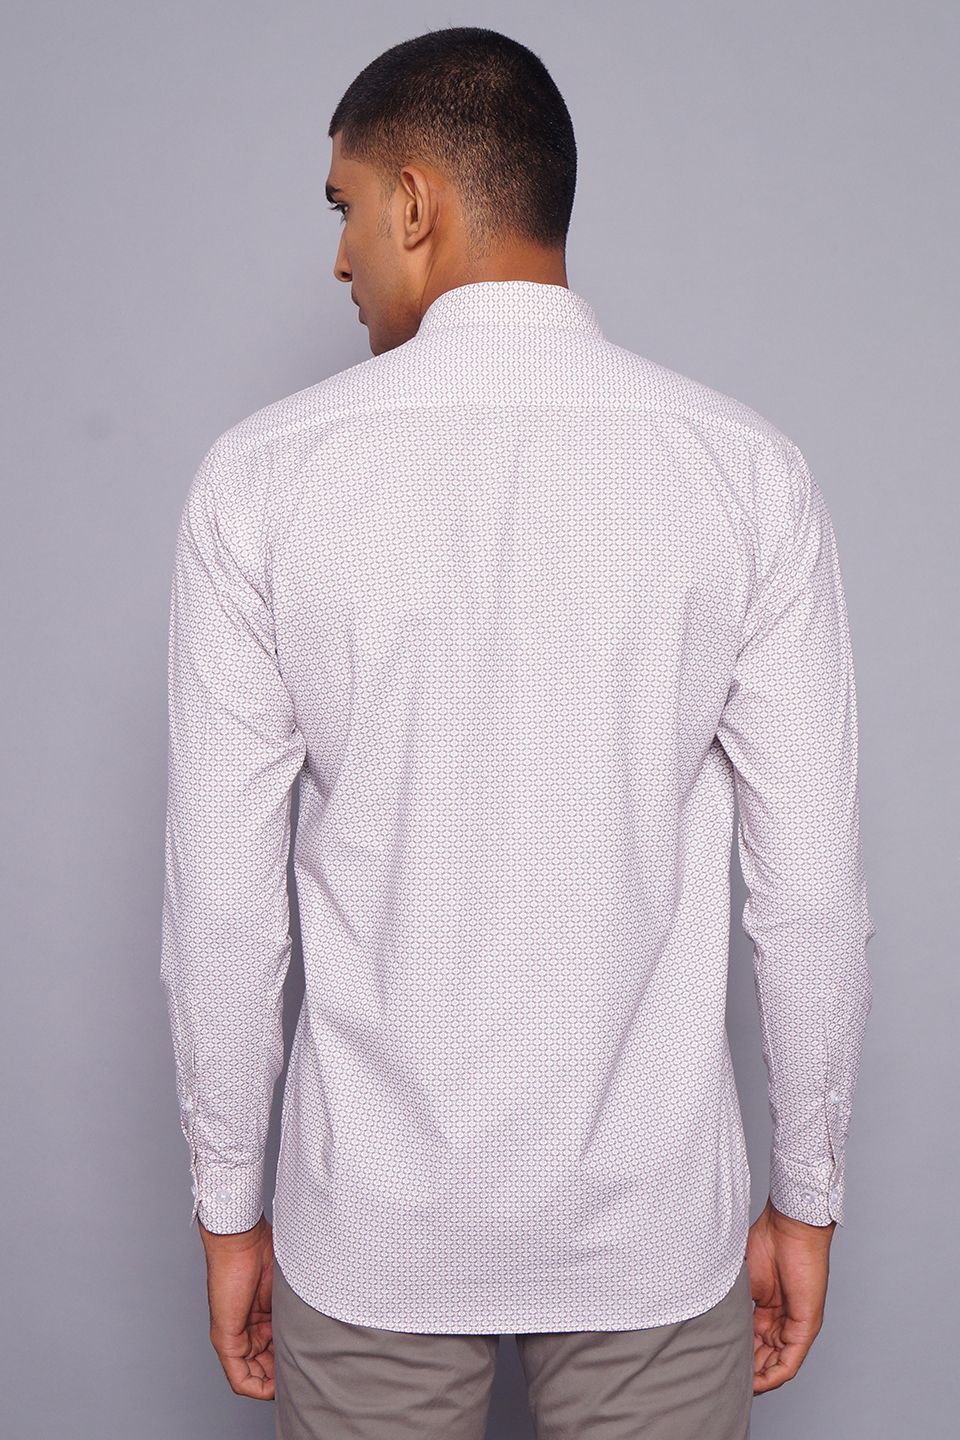 100% Premium Cotton White Shirt